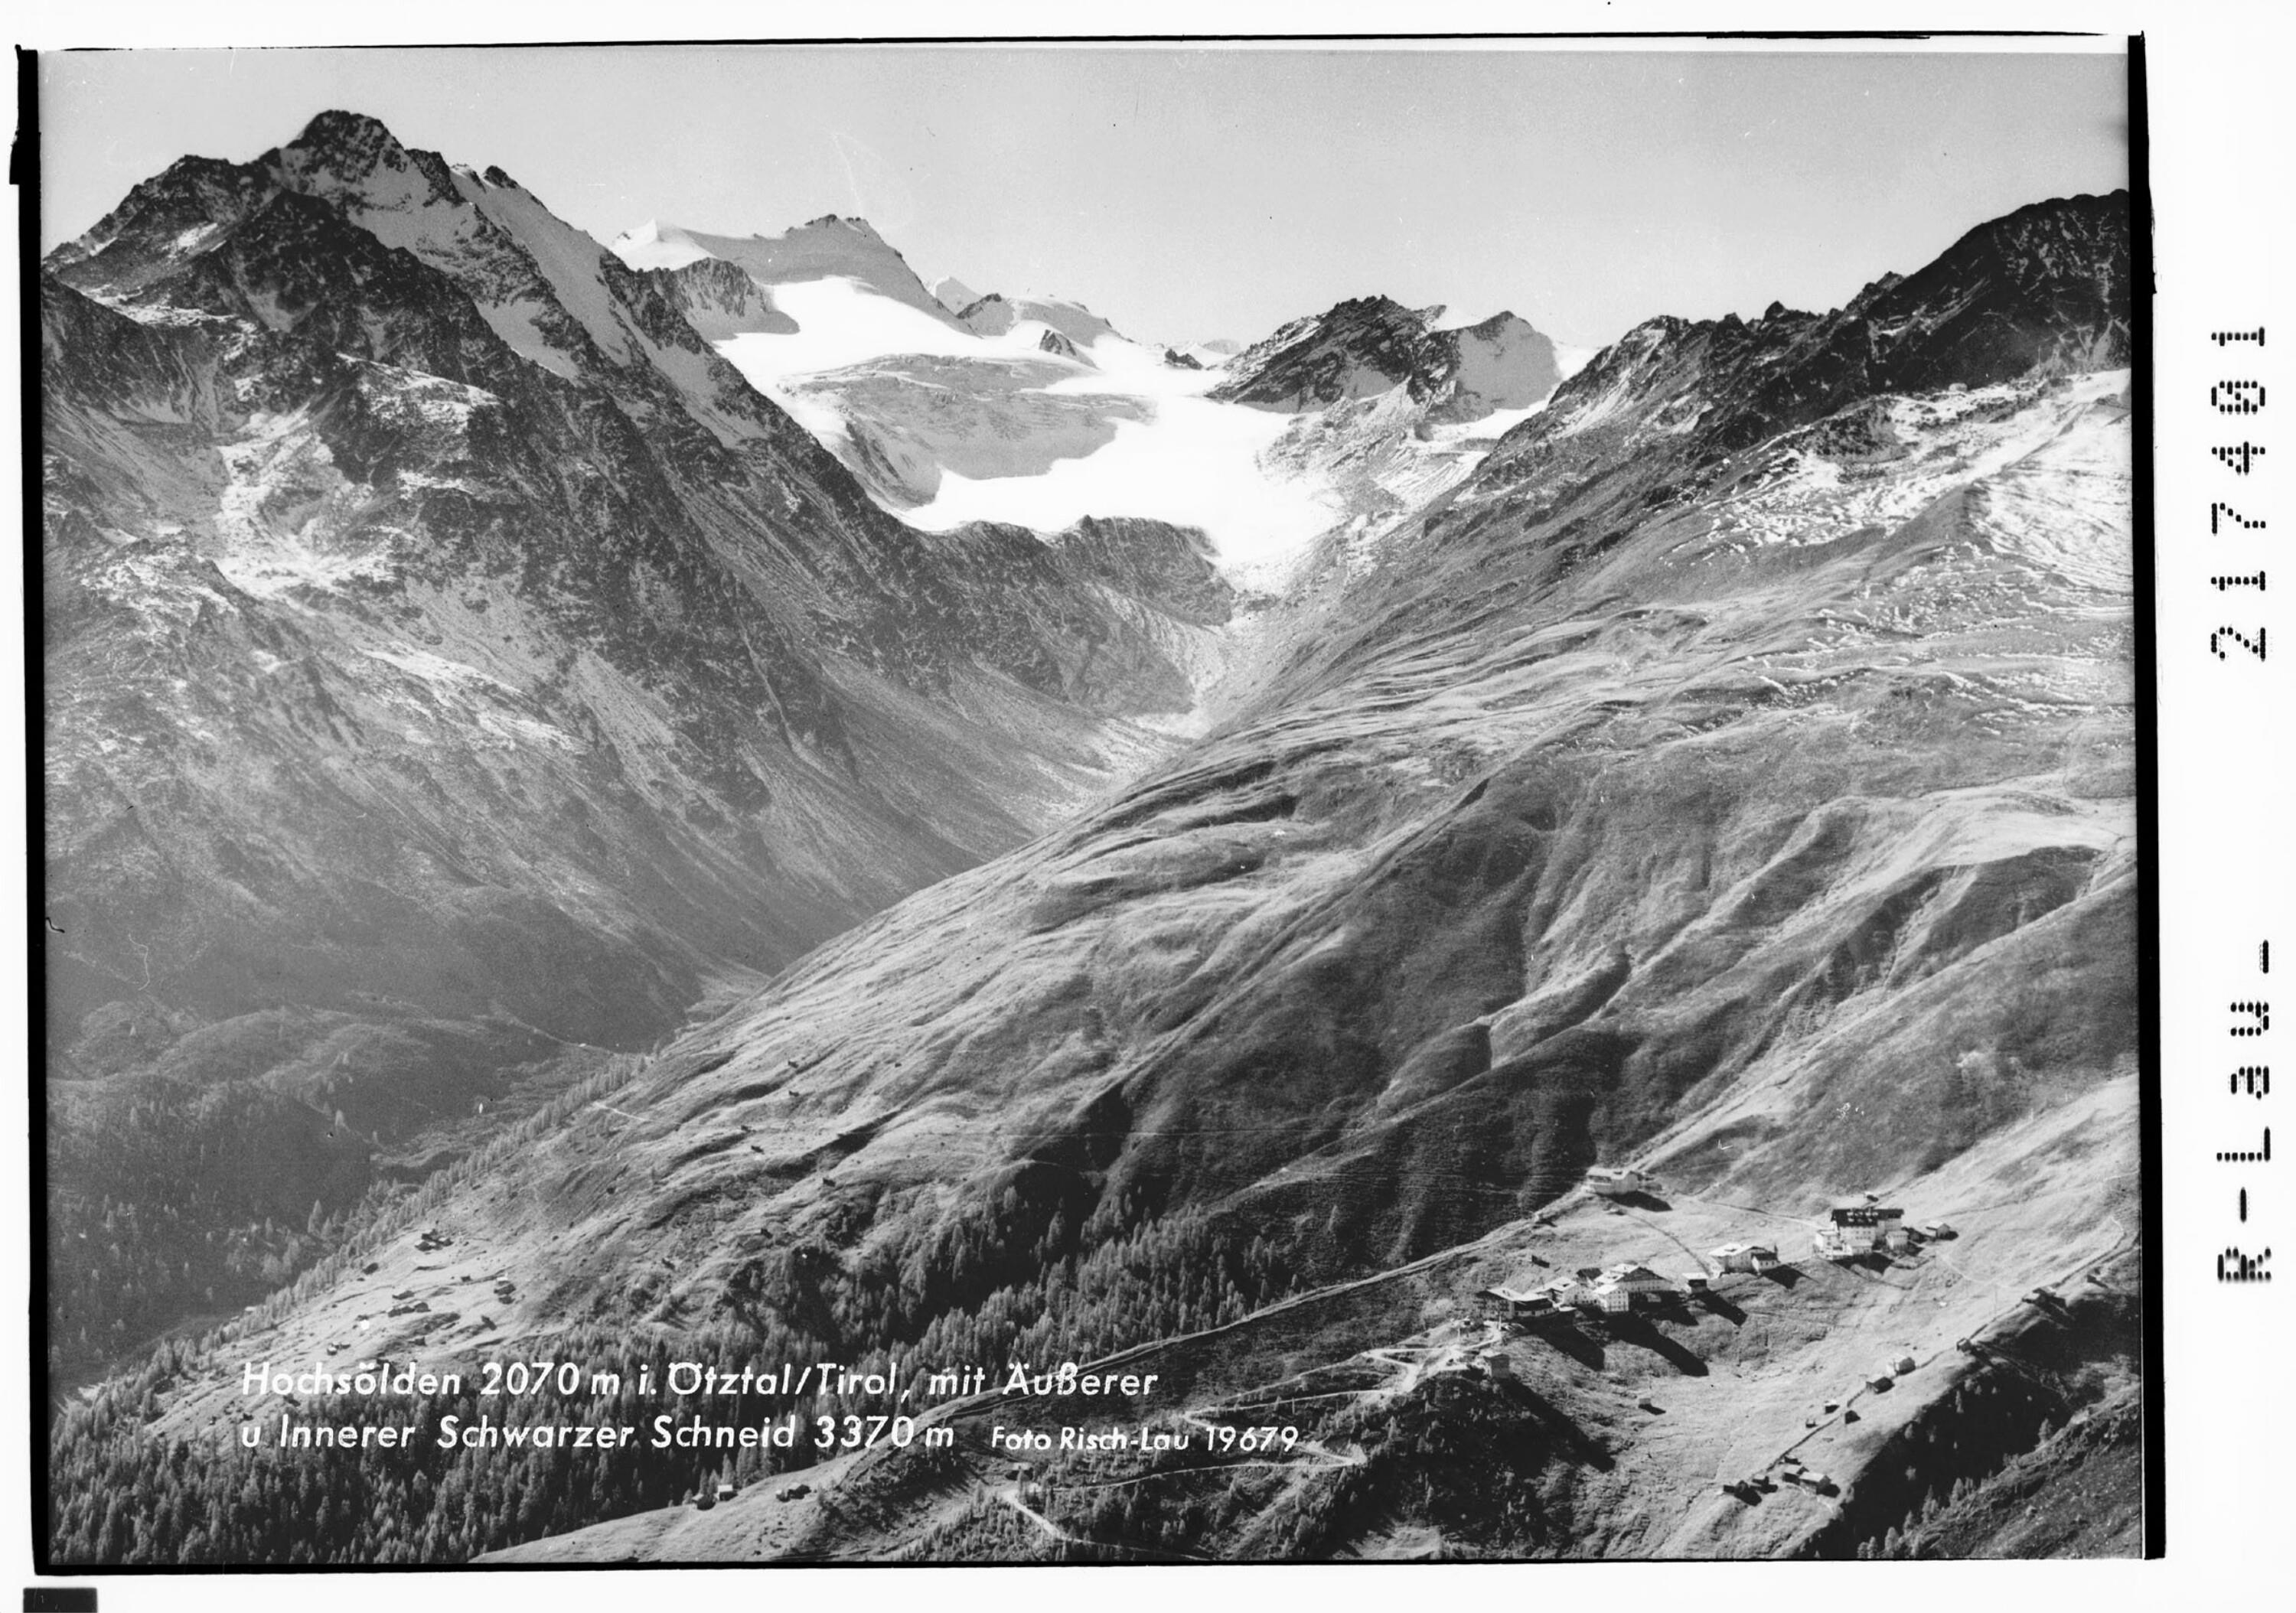 Hochsölden 2070 m im Ötztal / Tirol mit Äusserer und Innerer Schwarzen Schneid 3370 m></div>


    <hr>
    <div class=